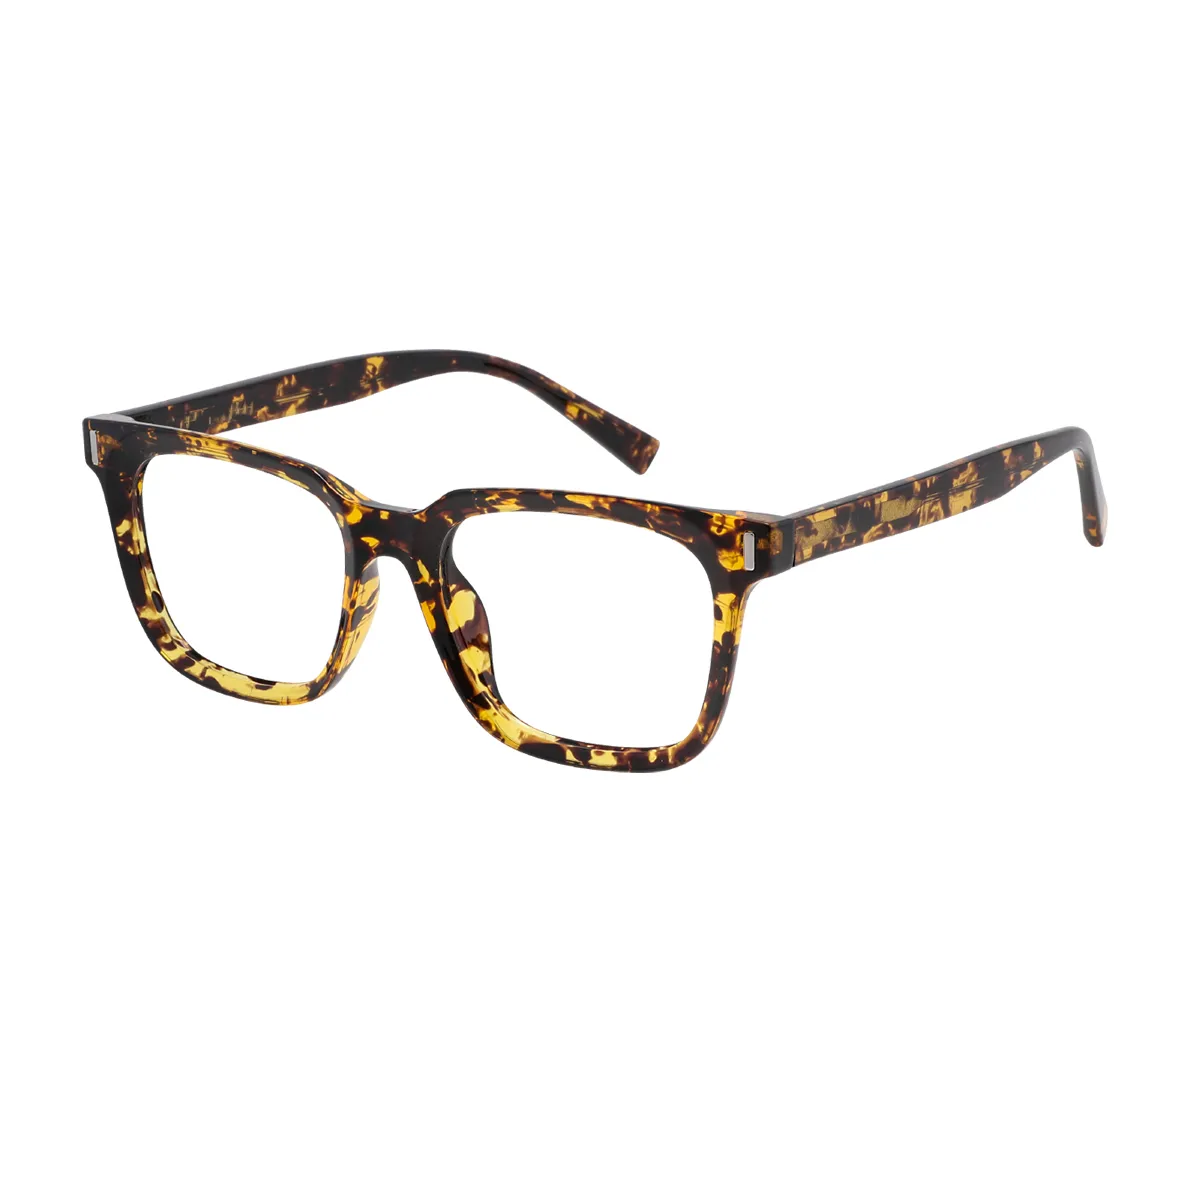 Albertine - Square Tortoiseshell Glasses for Men & Women - EFE